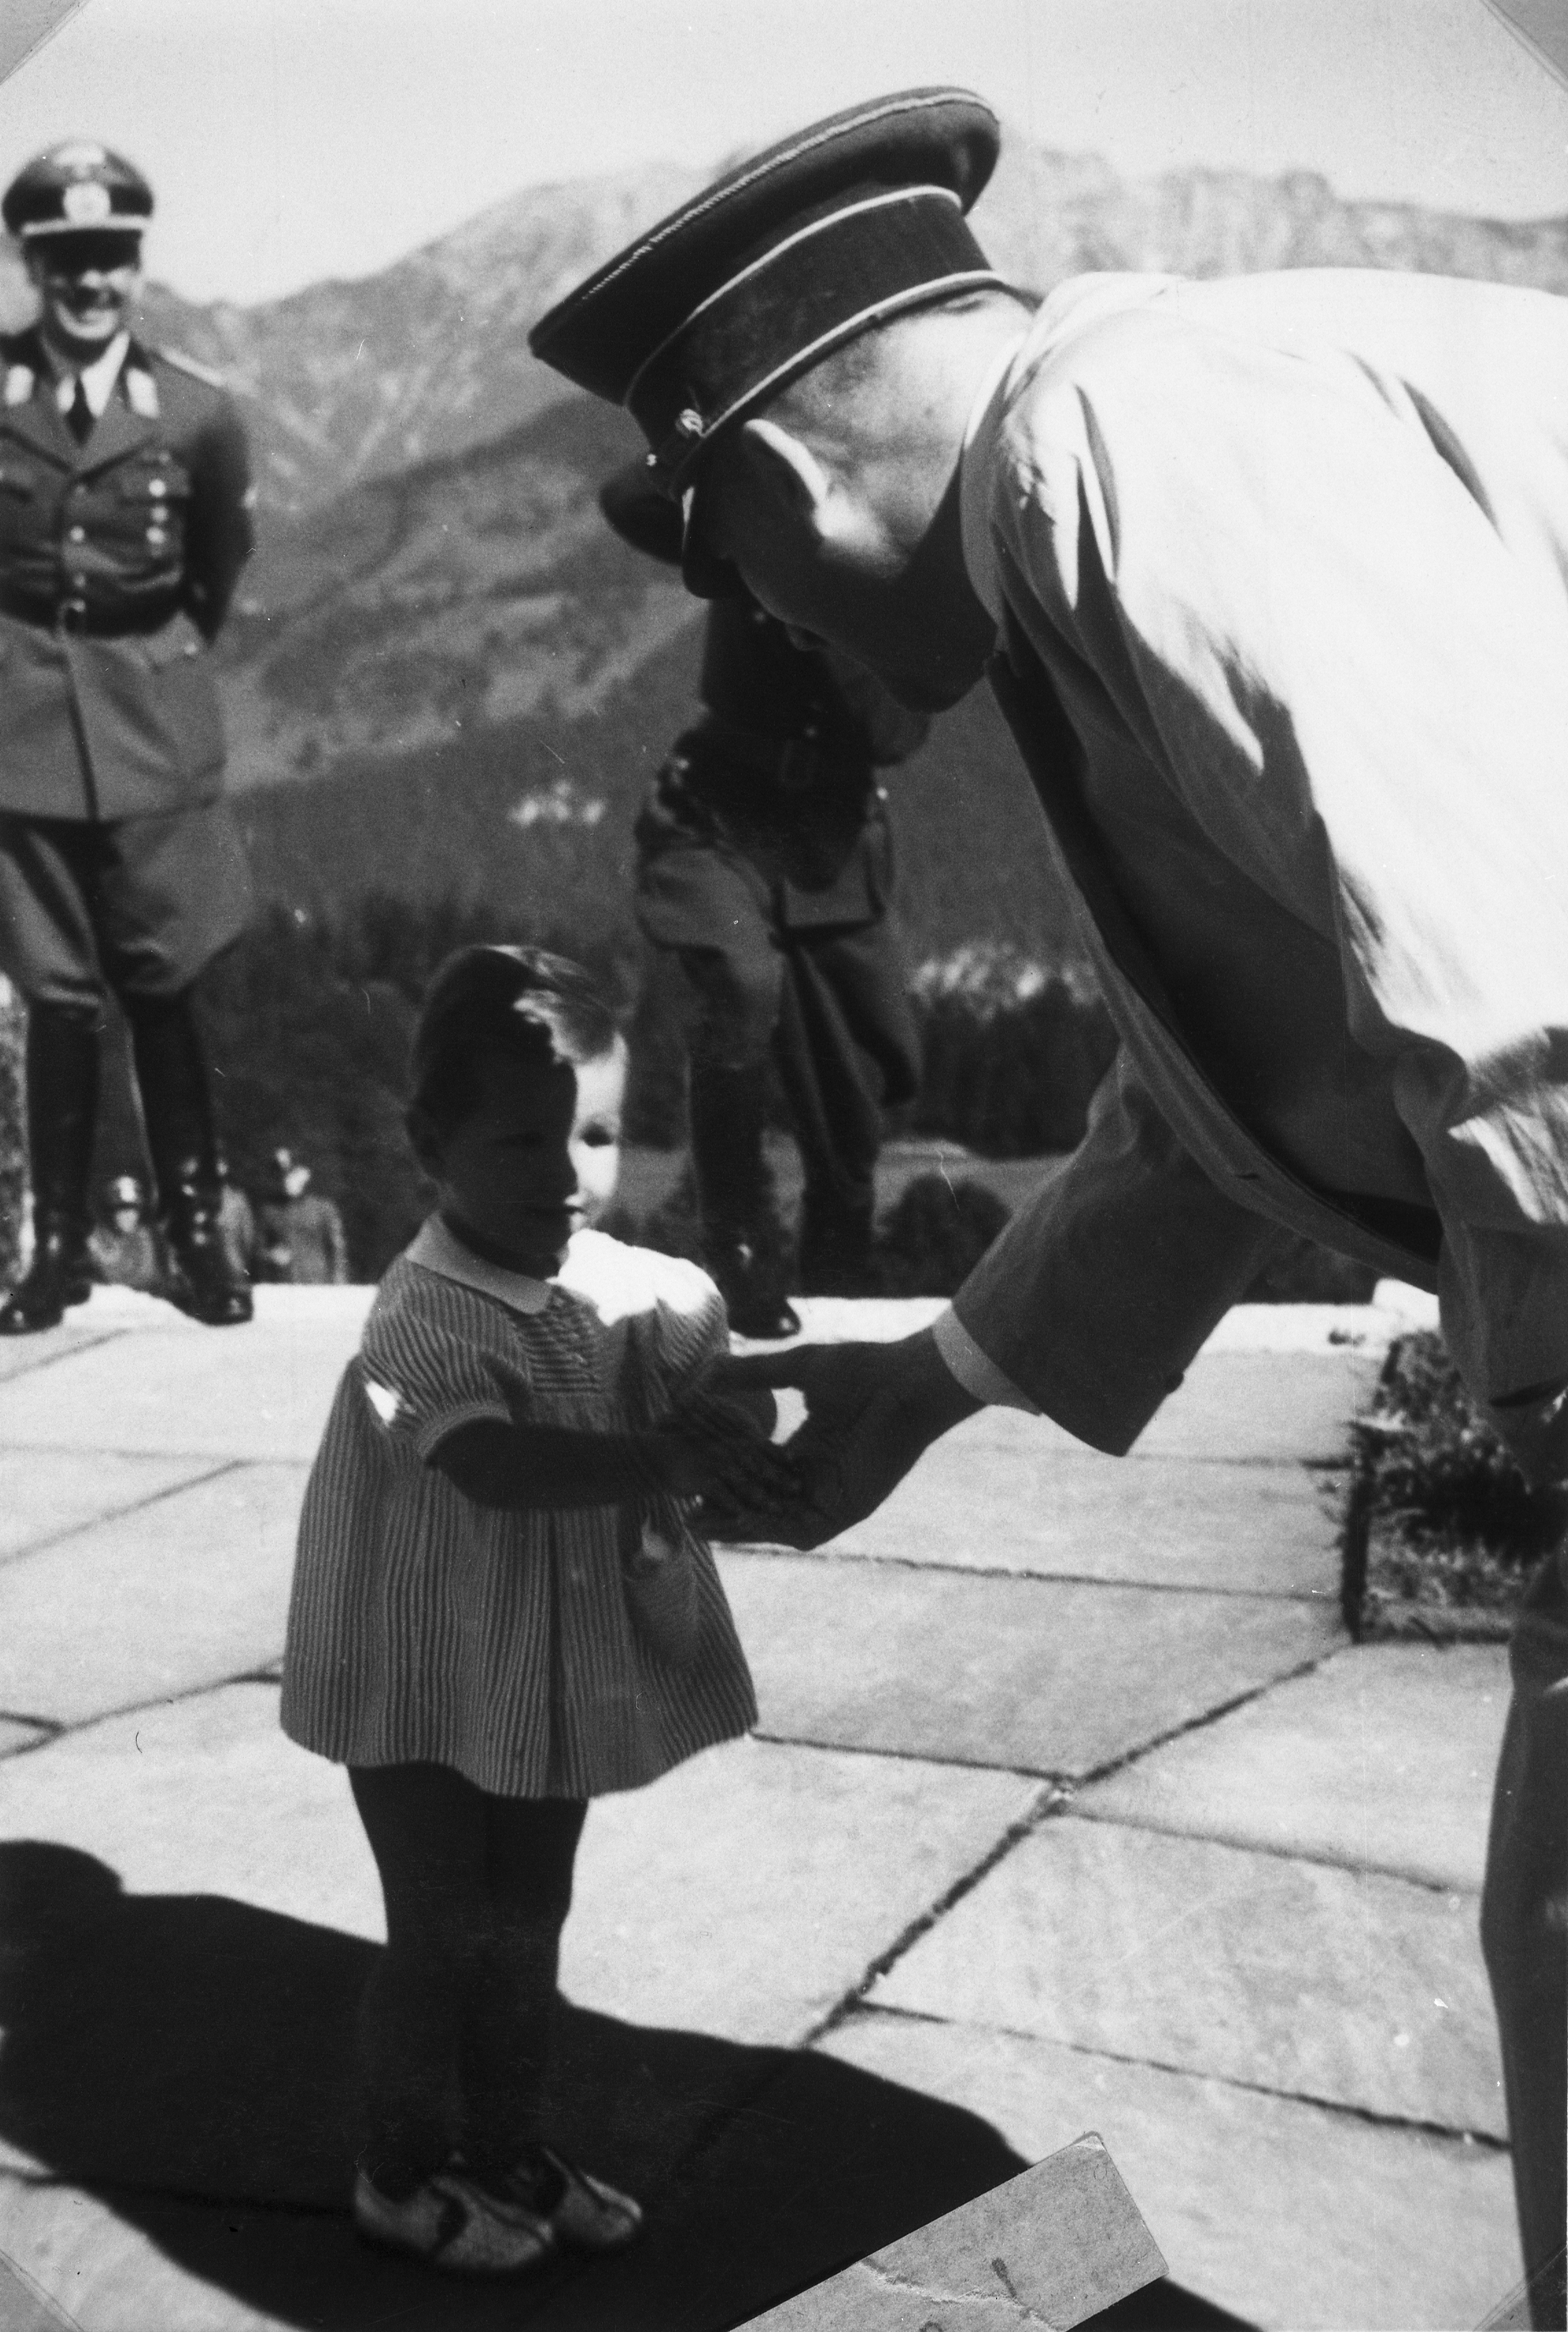 Adolf Hitler bids farewell to Uschi Schneider before his departure to Berlin, from Eva Braun's albums